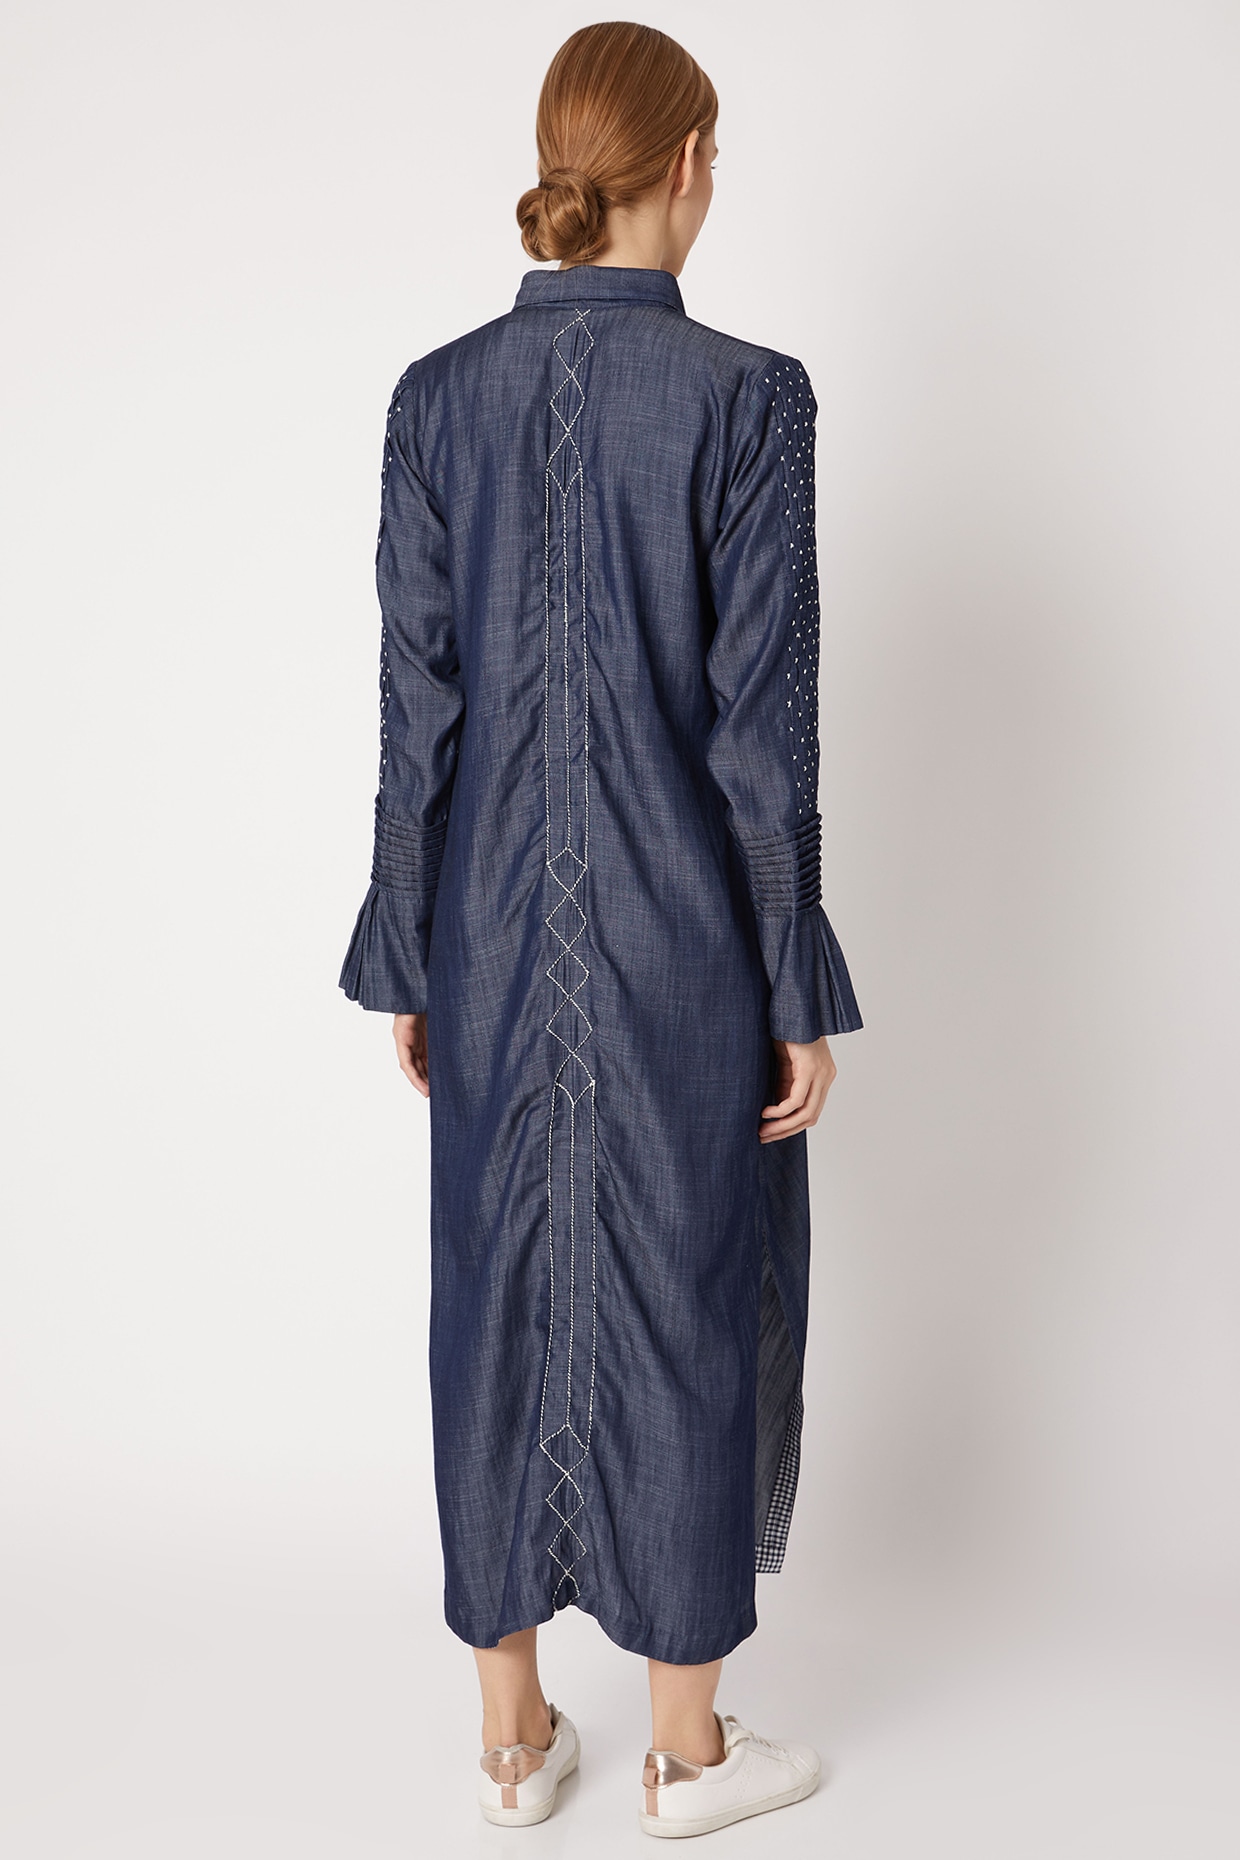 DENIM DRESS - Greyish | ZARA India